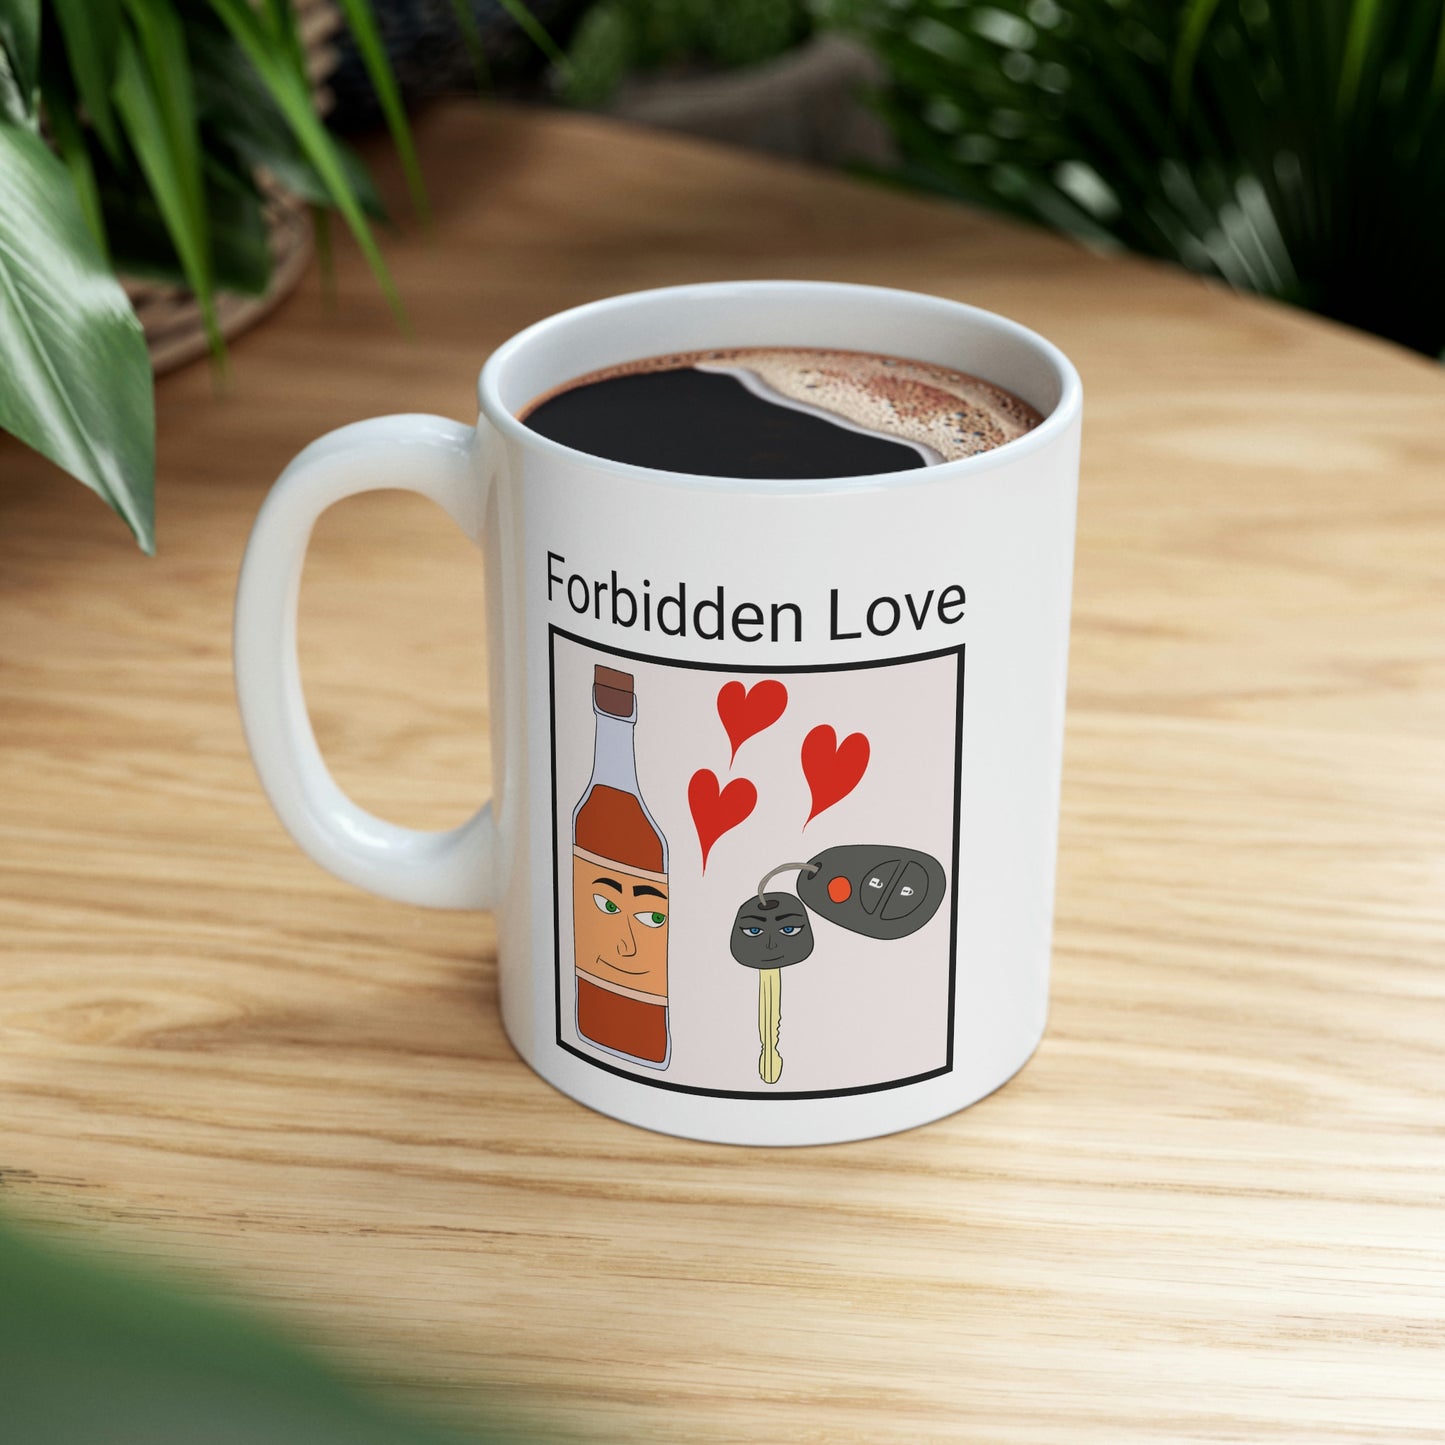 Forbidden Love Mug